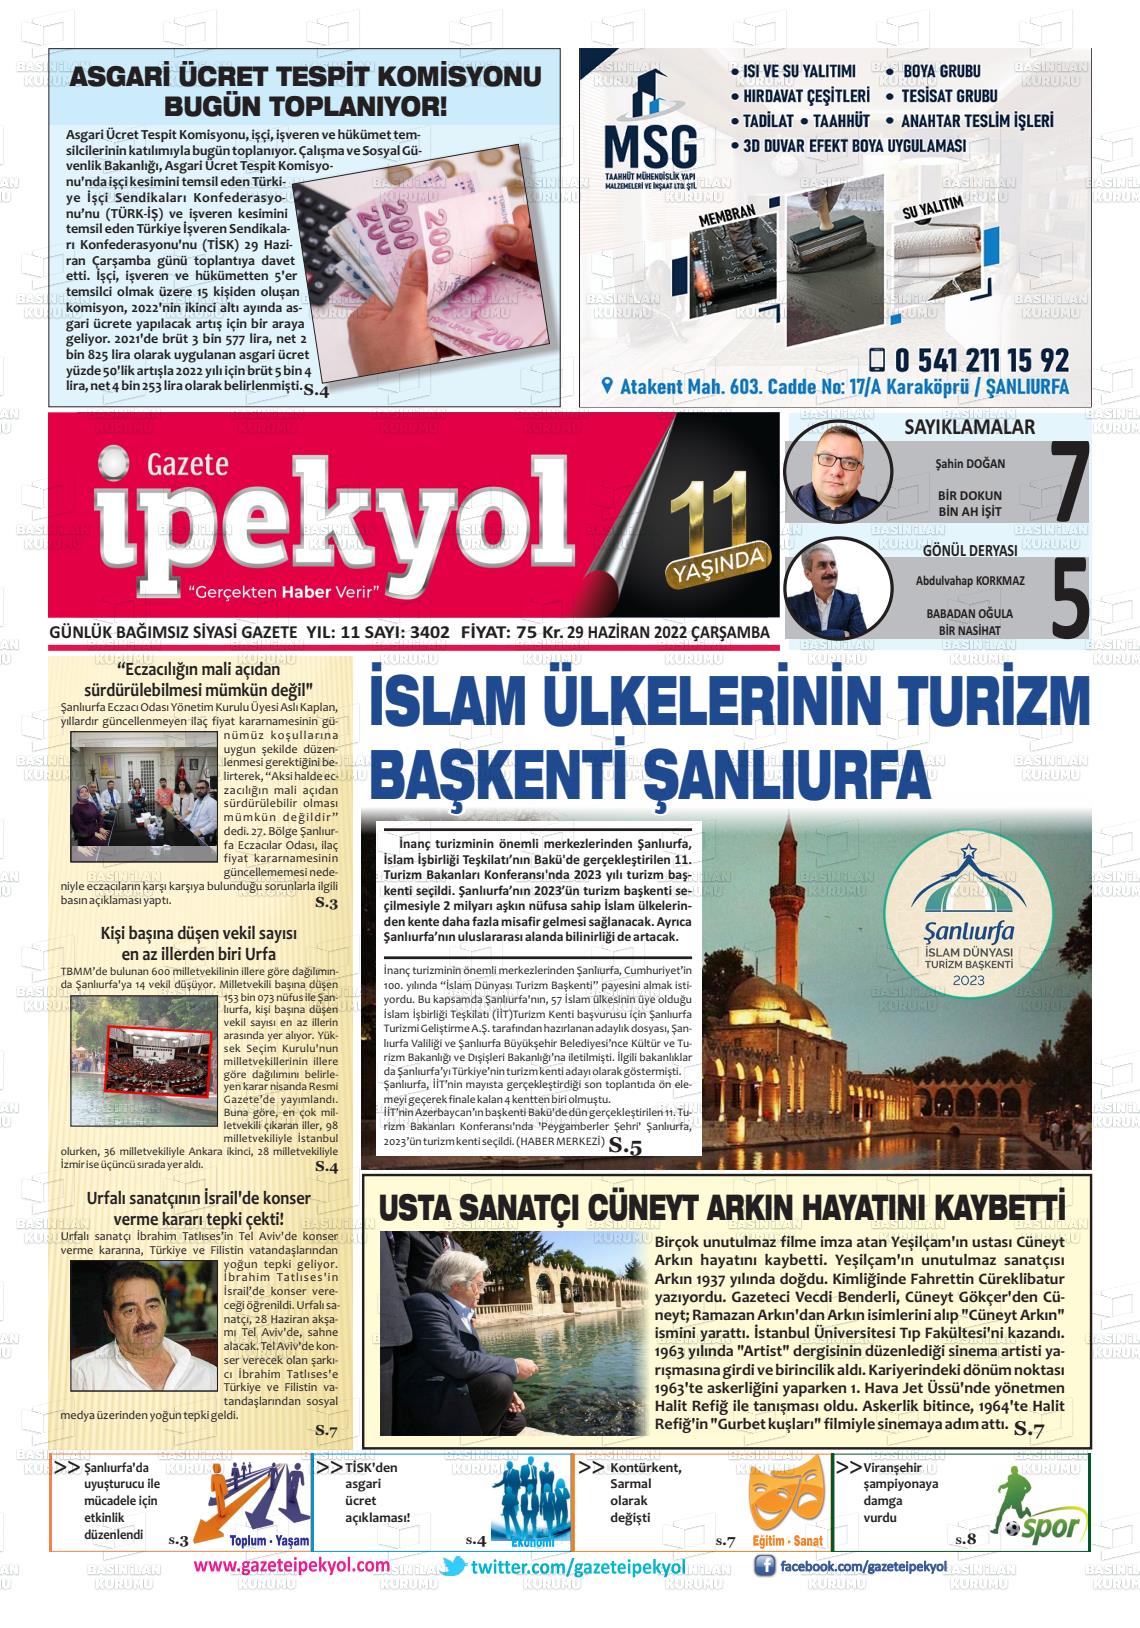 29 Haziran 2022 Gazete İpekyol Gazete Manşeti